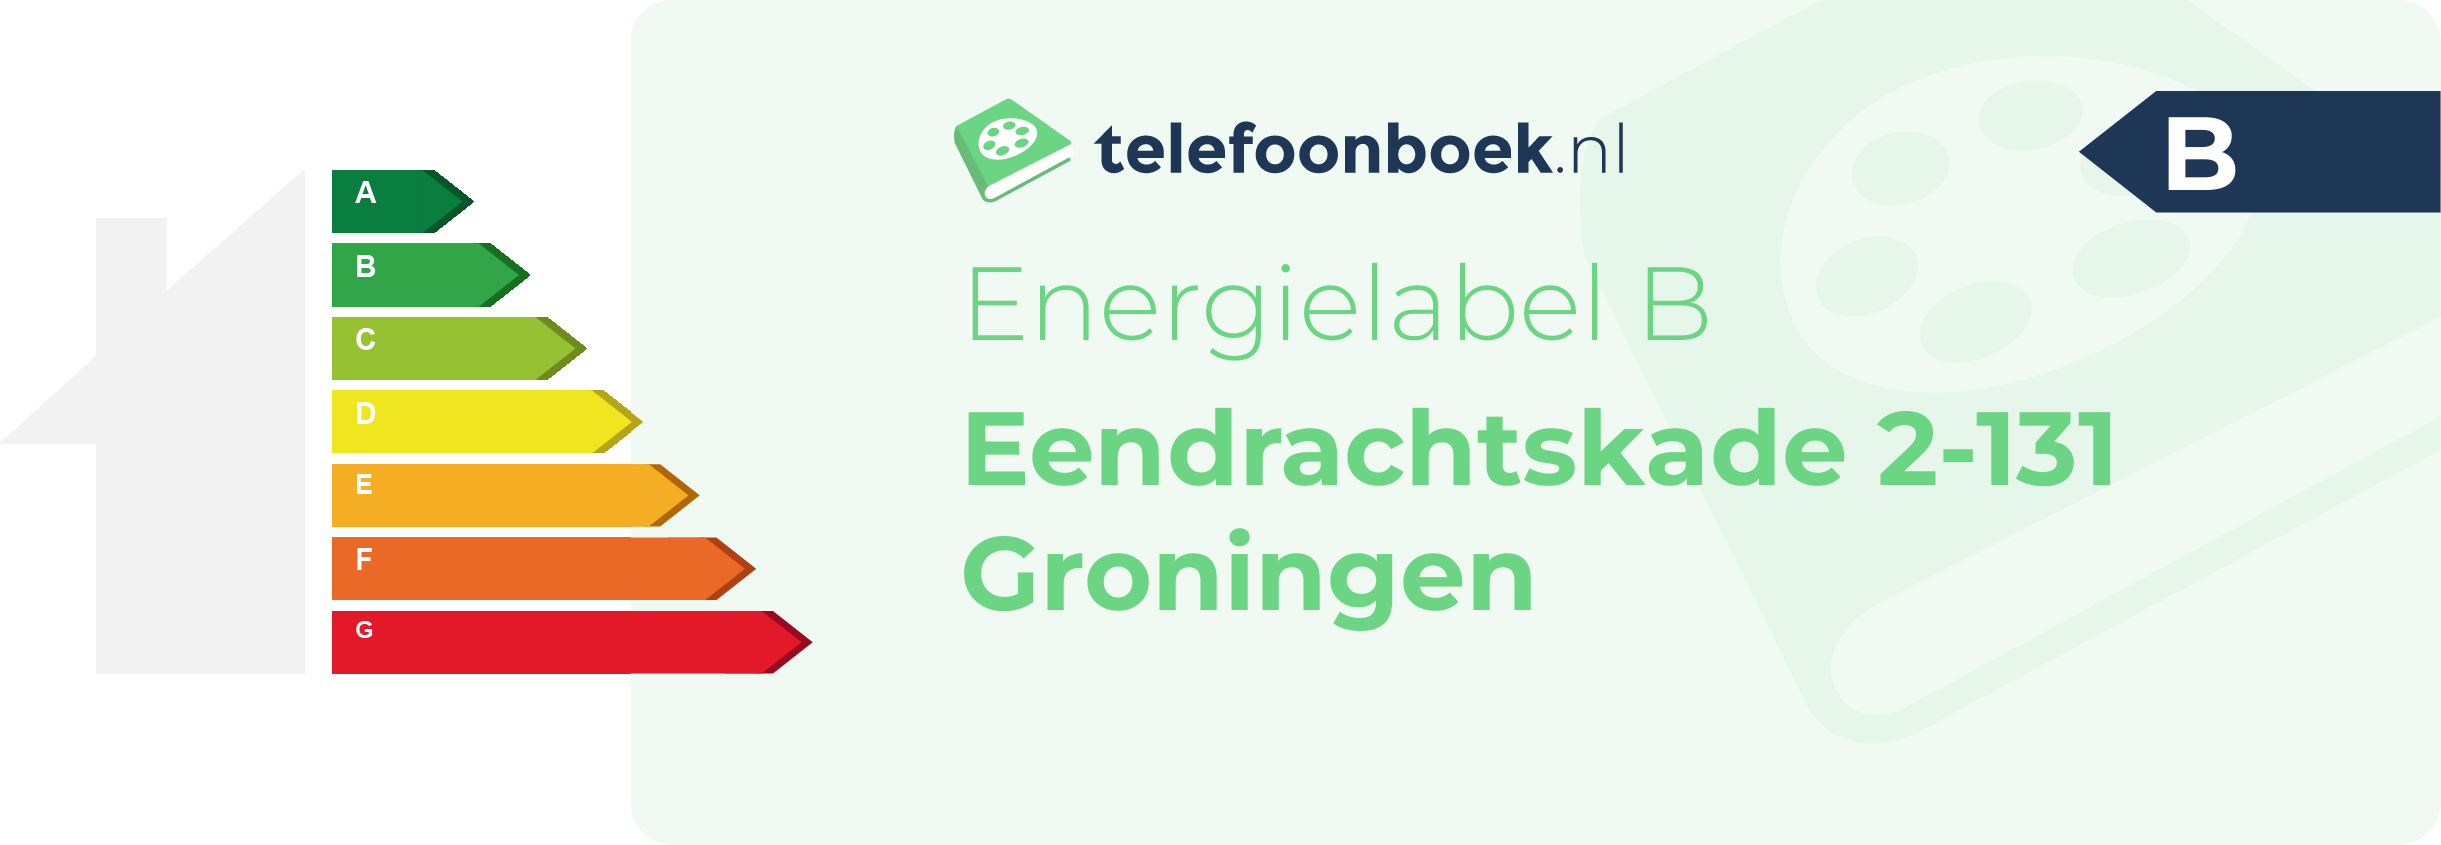 Energielabel Eendrachtskade 2-131 Groningen